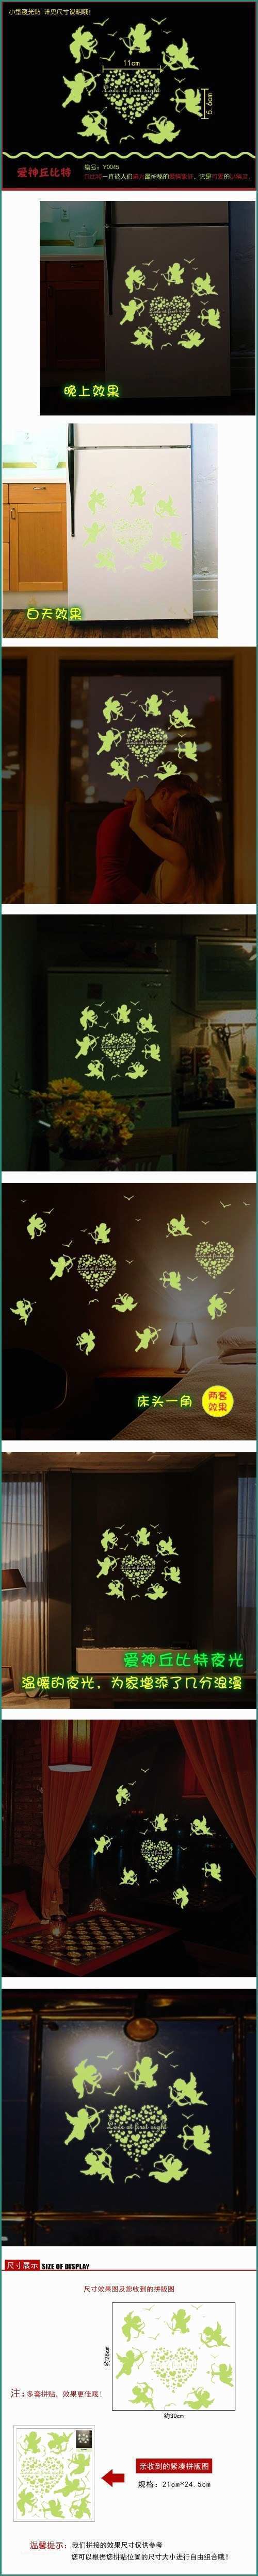 Color Cipria Per Pareti E Î¦ Î¦zs Sticker Adesivi Cupido Glow In the Dark Fluorescente Home